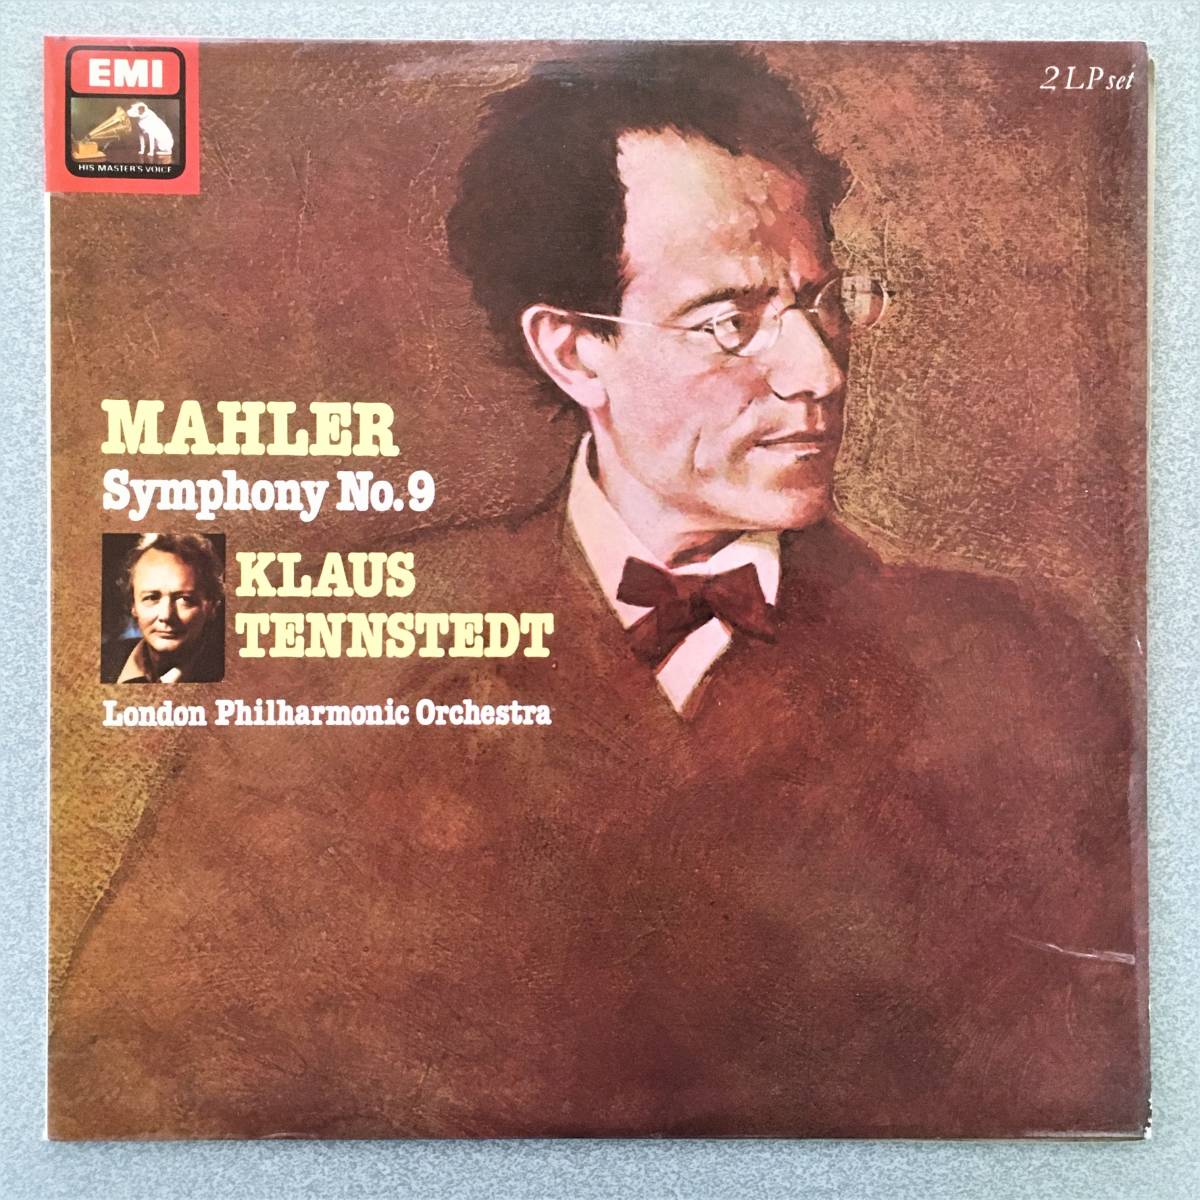 英EMI オリジナルSLS5188 2LP テンシュテット マーラー 交響曲第9番 壮大なマーラーの音楽宇宙を圧倒的迫力で描き出す_画像1